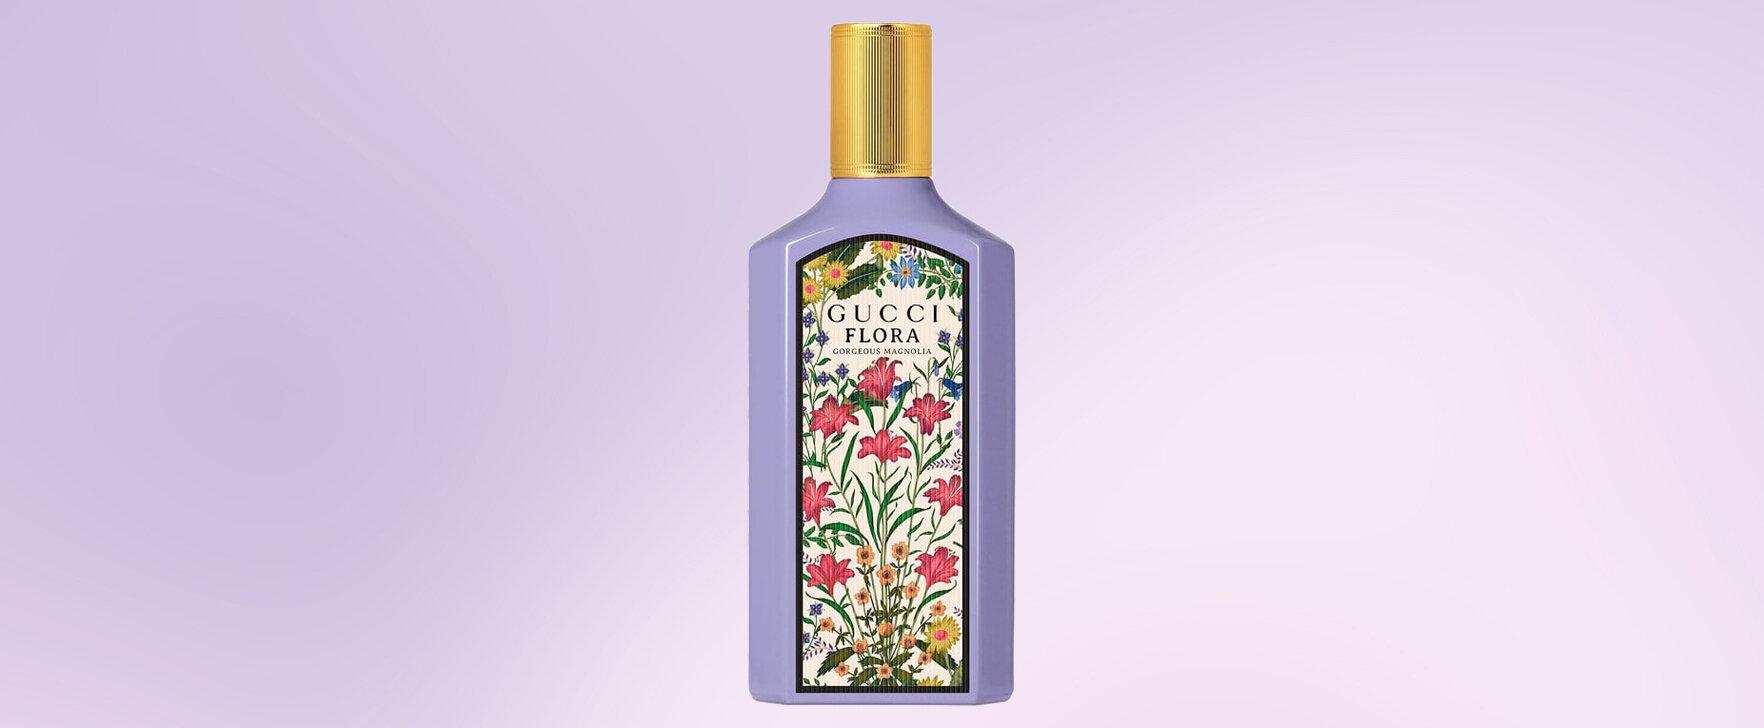 Floral Fragrance Journey: Gucci's New Eau de Parfum "Flora Gorgeous Magnolia"